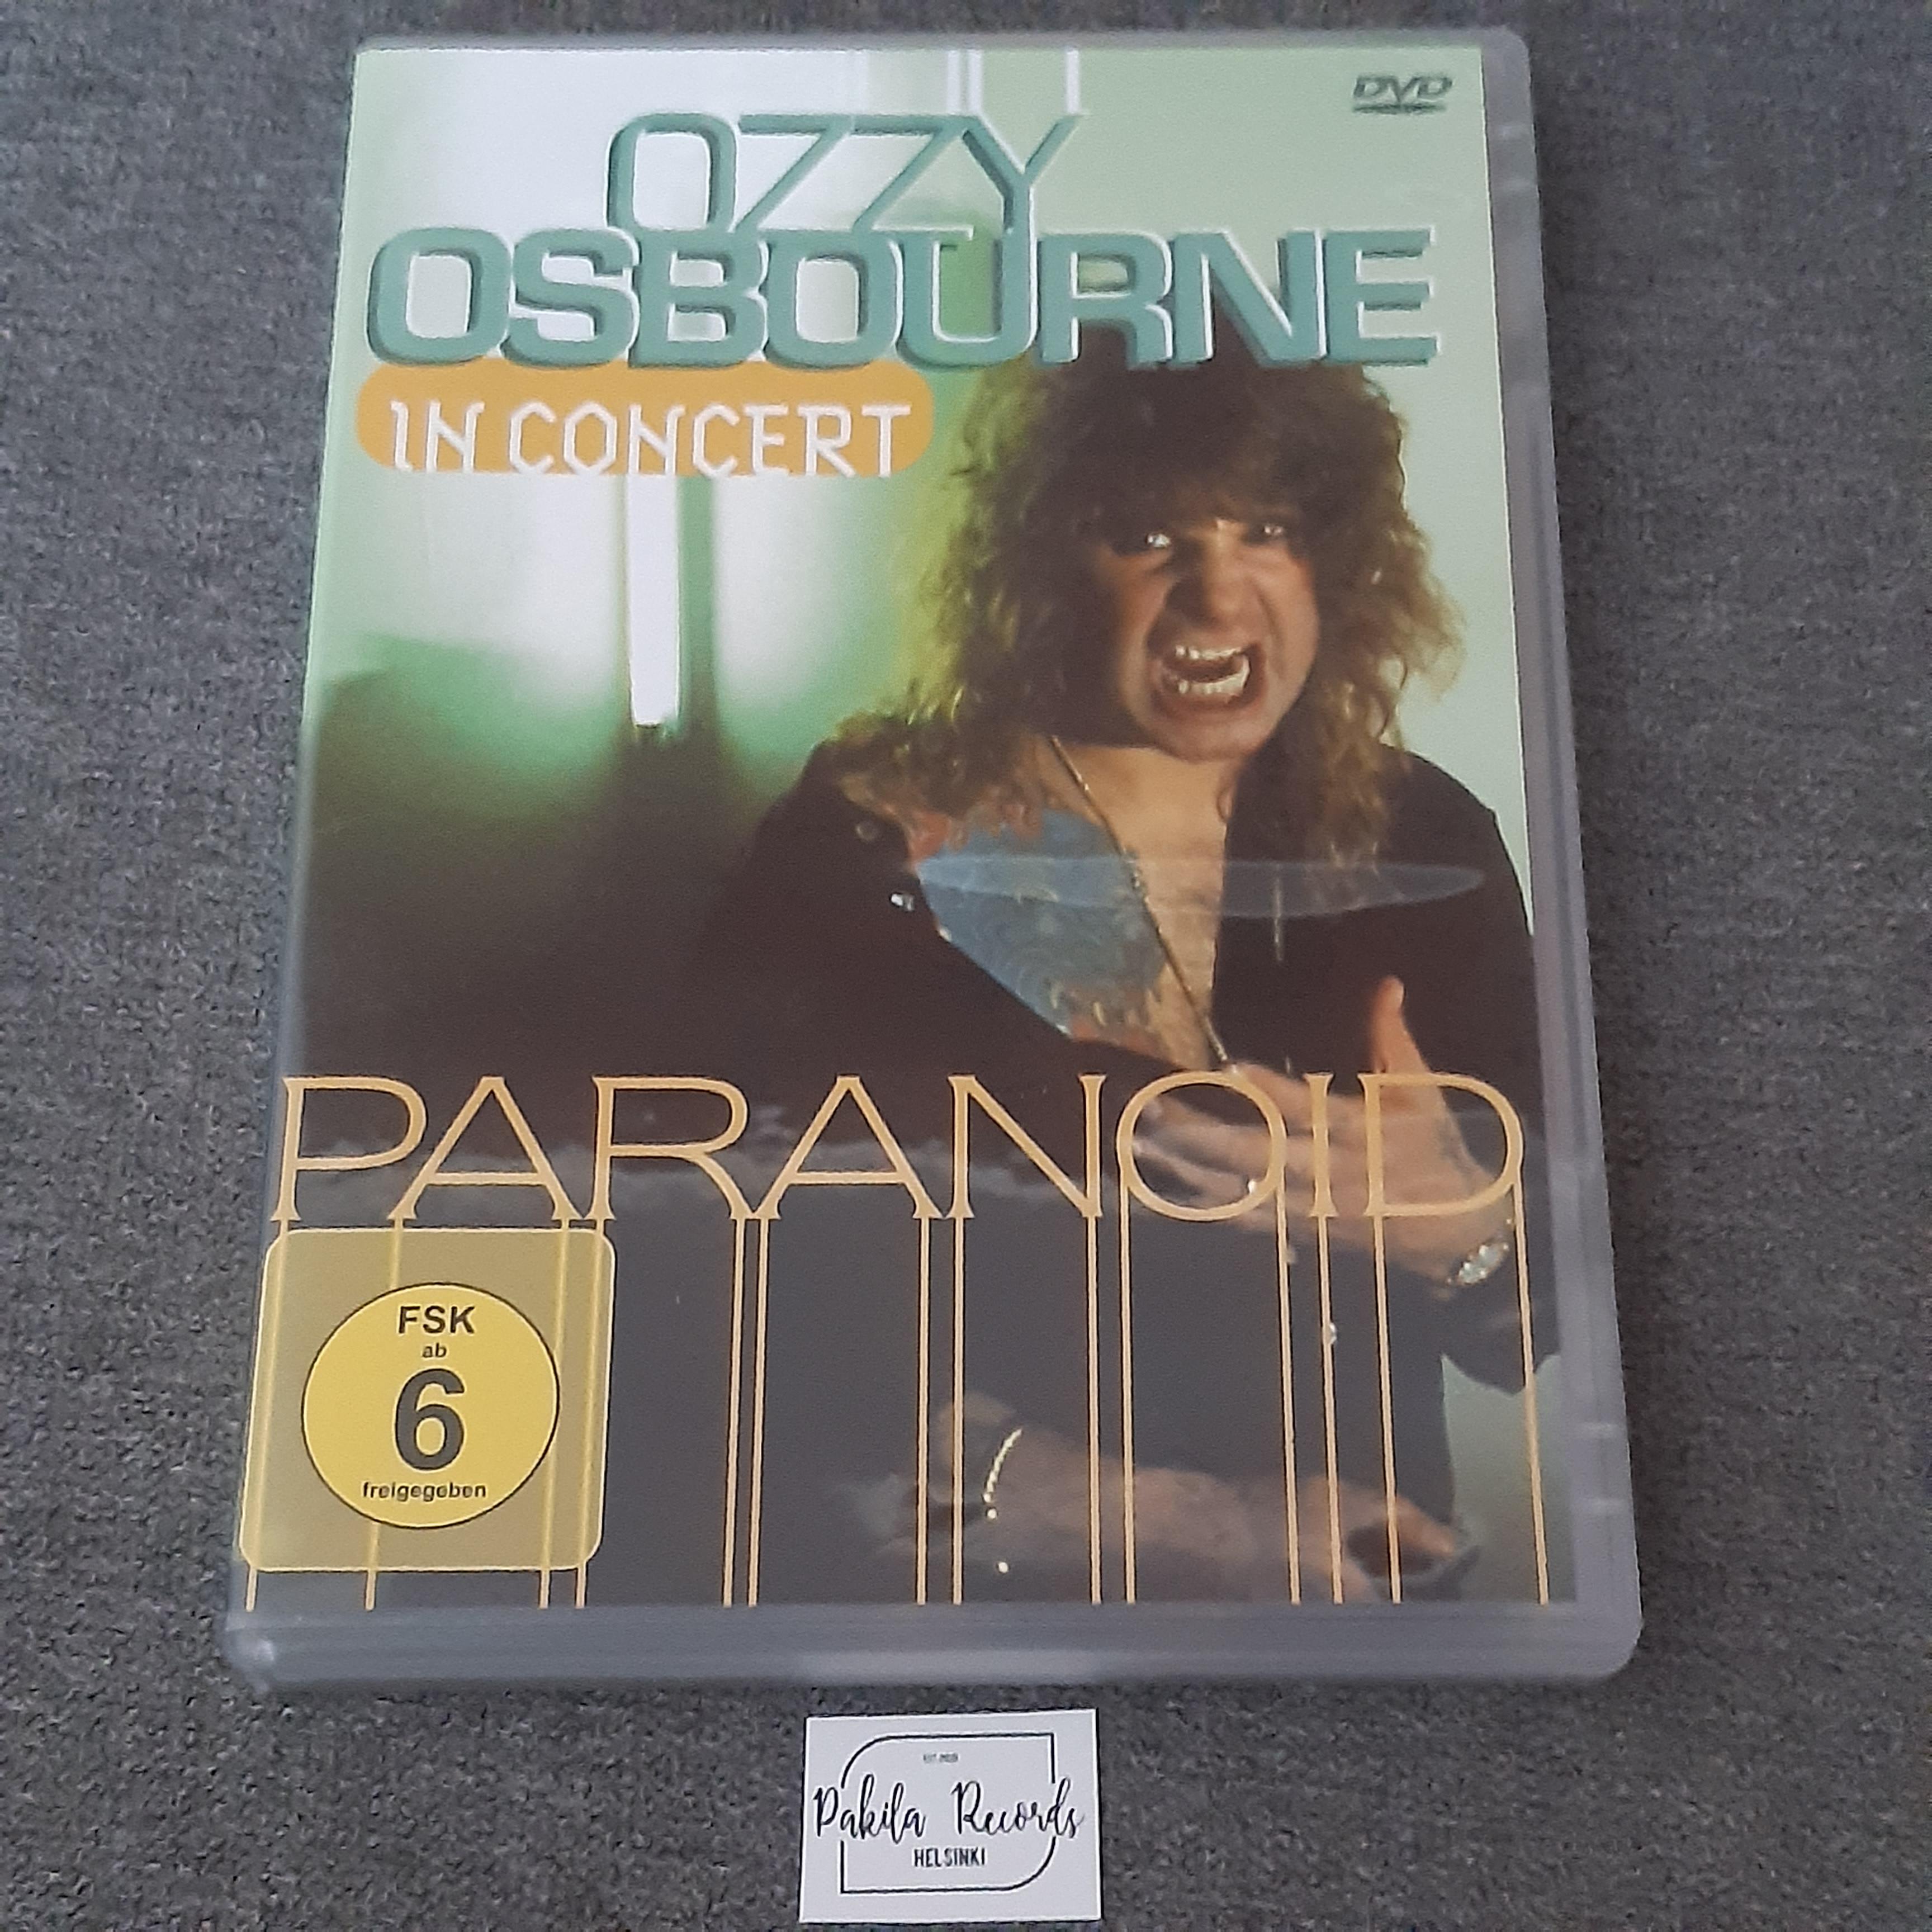 Ozzy Osbourne - In Concert - DVD (käytetty)